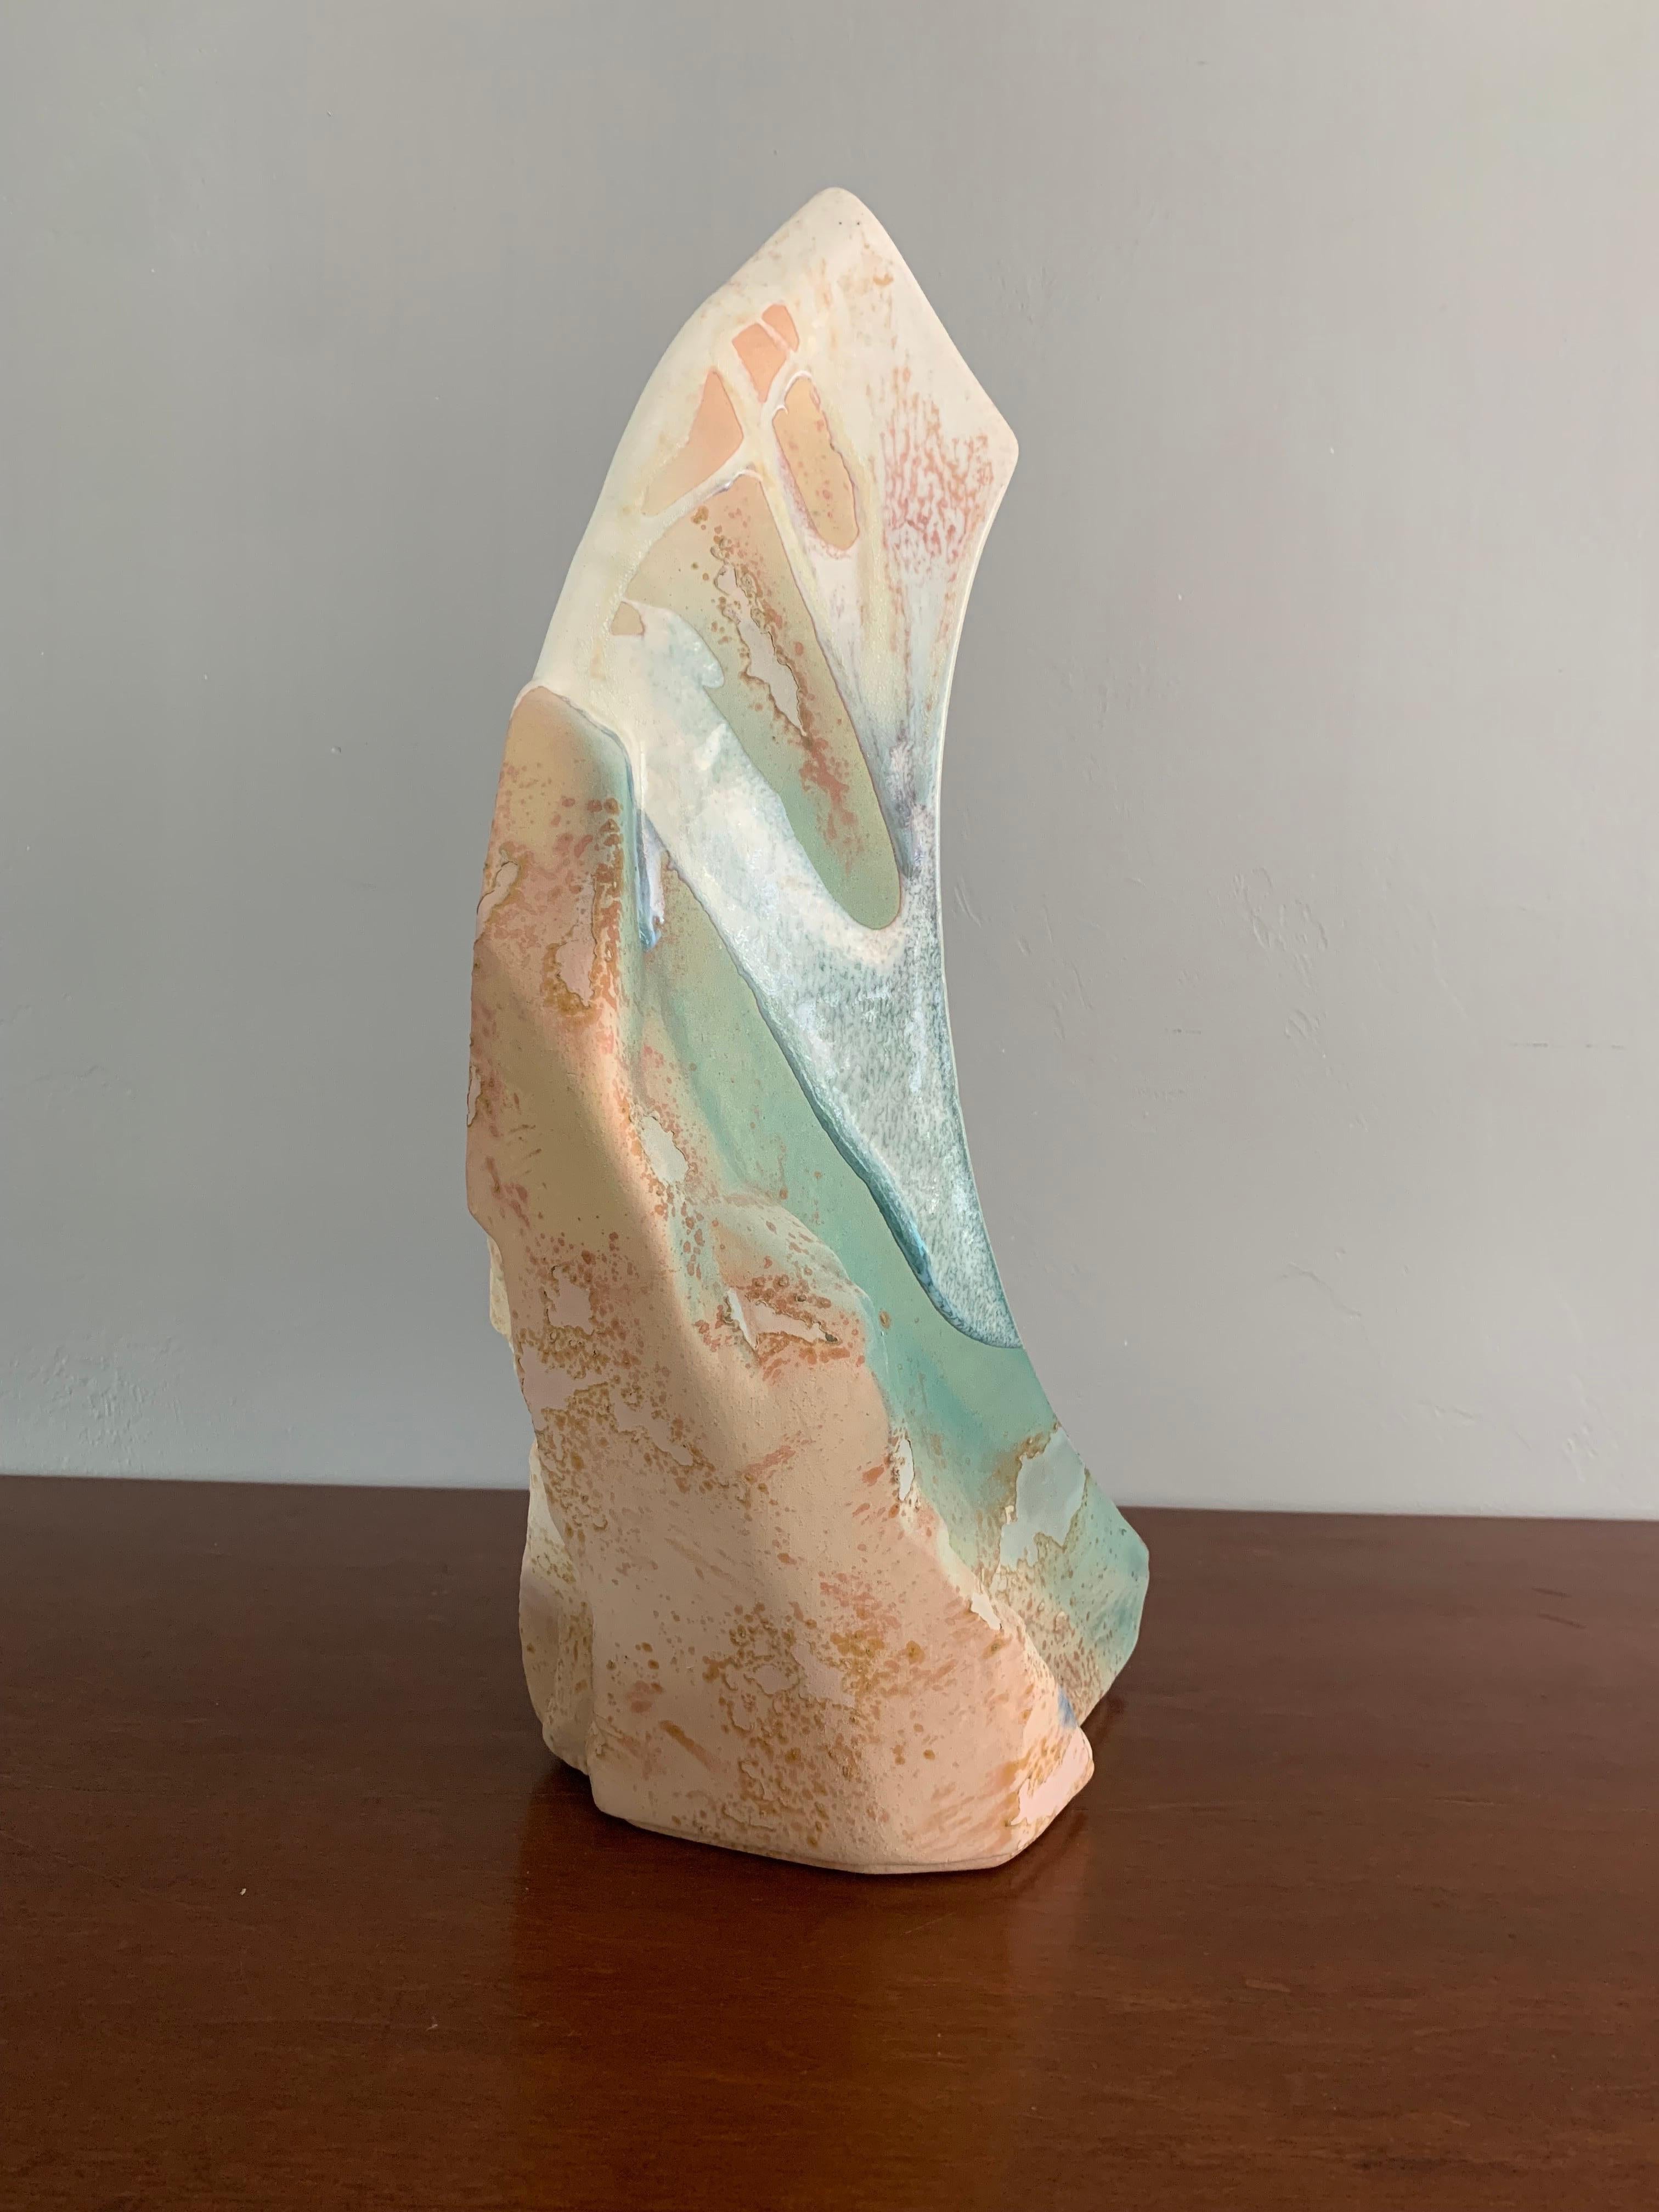 Grand et magnifique vase en raku multicolore. Réalisé dans le style traditionnel raku par le célèbre artiste américain Tony Evans. La texture du raku met en valeur les courbes et la forme du vase, qui ressemble à une crête de montagne. Signé en